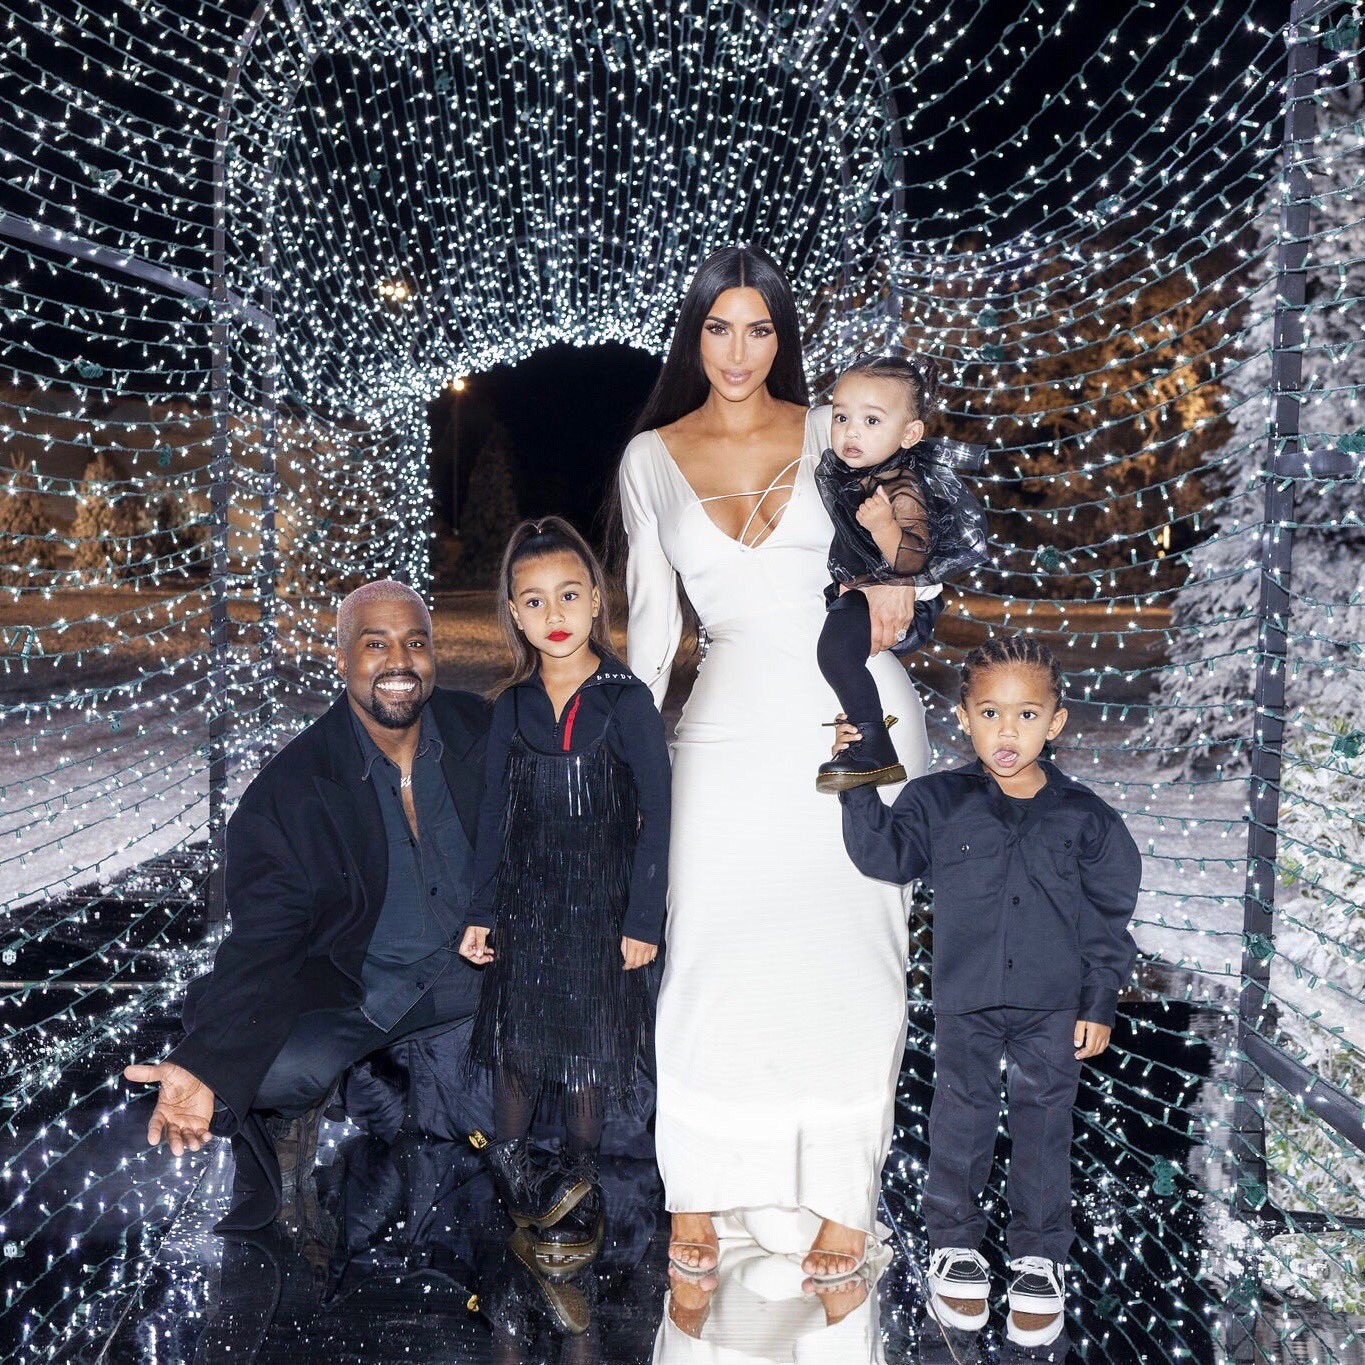 A socialite Kim Kardashian com o marido, Kanye West, e os filhos - incluindo a pequena North de batom - na foto que gerou polêmica nas redes sociais (Foto: Twitter)